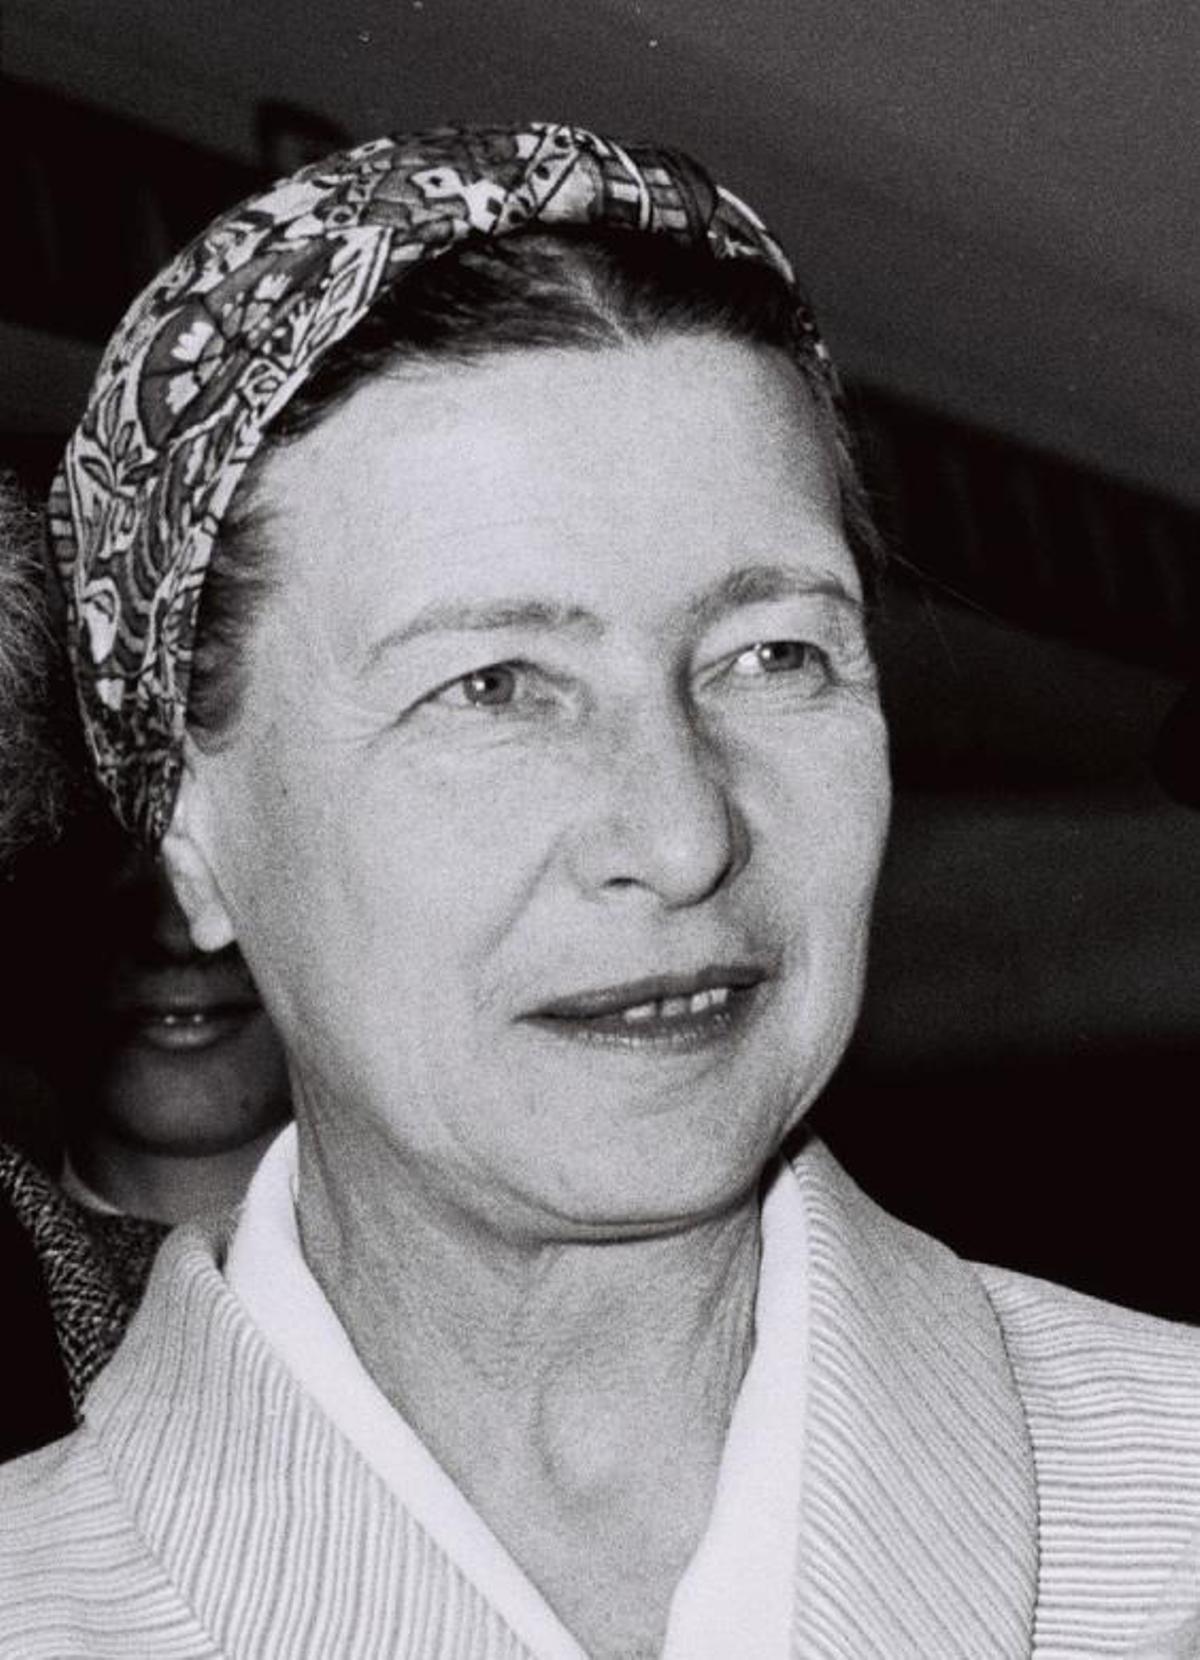 Simone de Beauvoir (1908-1986). La filósofa y escritora francesa, fue una de las grandes luchadoras contra el sistema patriarcal. Explicó su teoría en su libro, El segundo sexo, que afirma que los hombres han negado históricamente la identidad femenina, además de incluir críticas a la educación de los niños y a cuestiones como la visión de la maternidad como una esencia de la mujer.